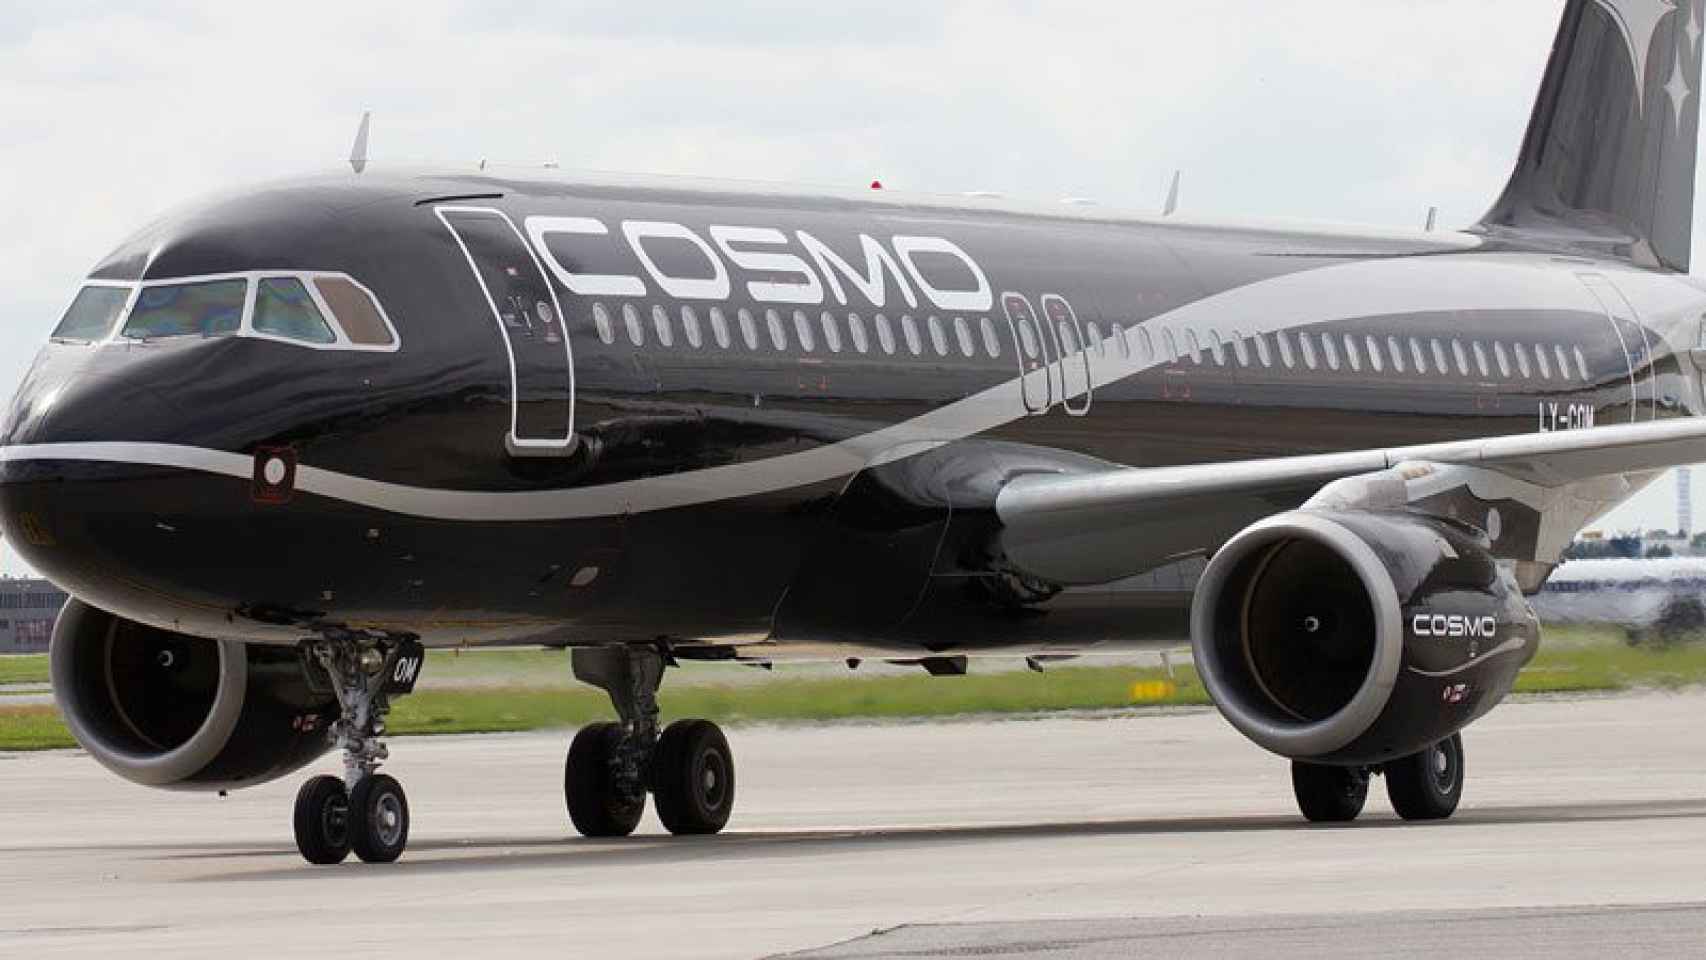 La 'desconocida' Cosmo Airlines cesó operaciones en Madrid en 2012.